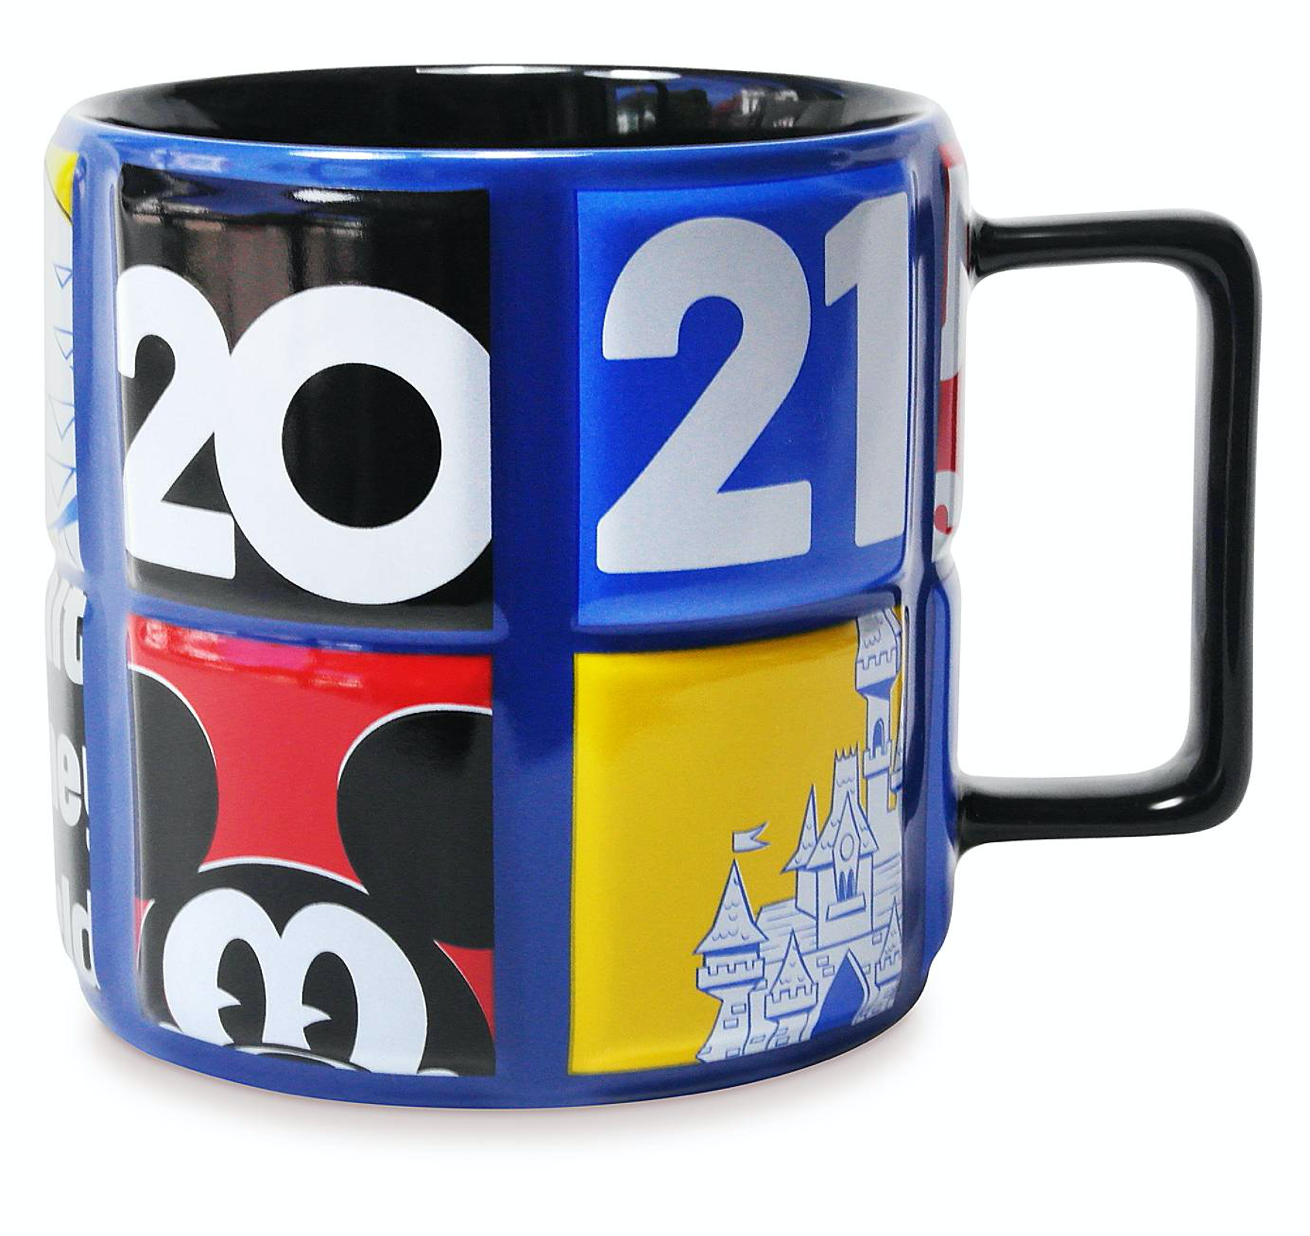 Disney Parks WDW 2021 Mickey and Friends Ceramic Coffee Mug New